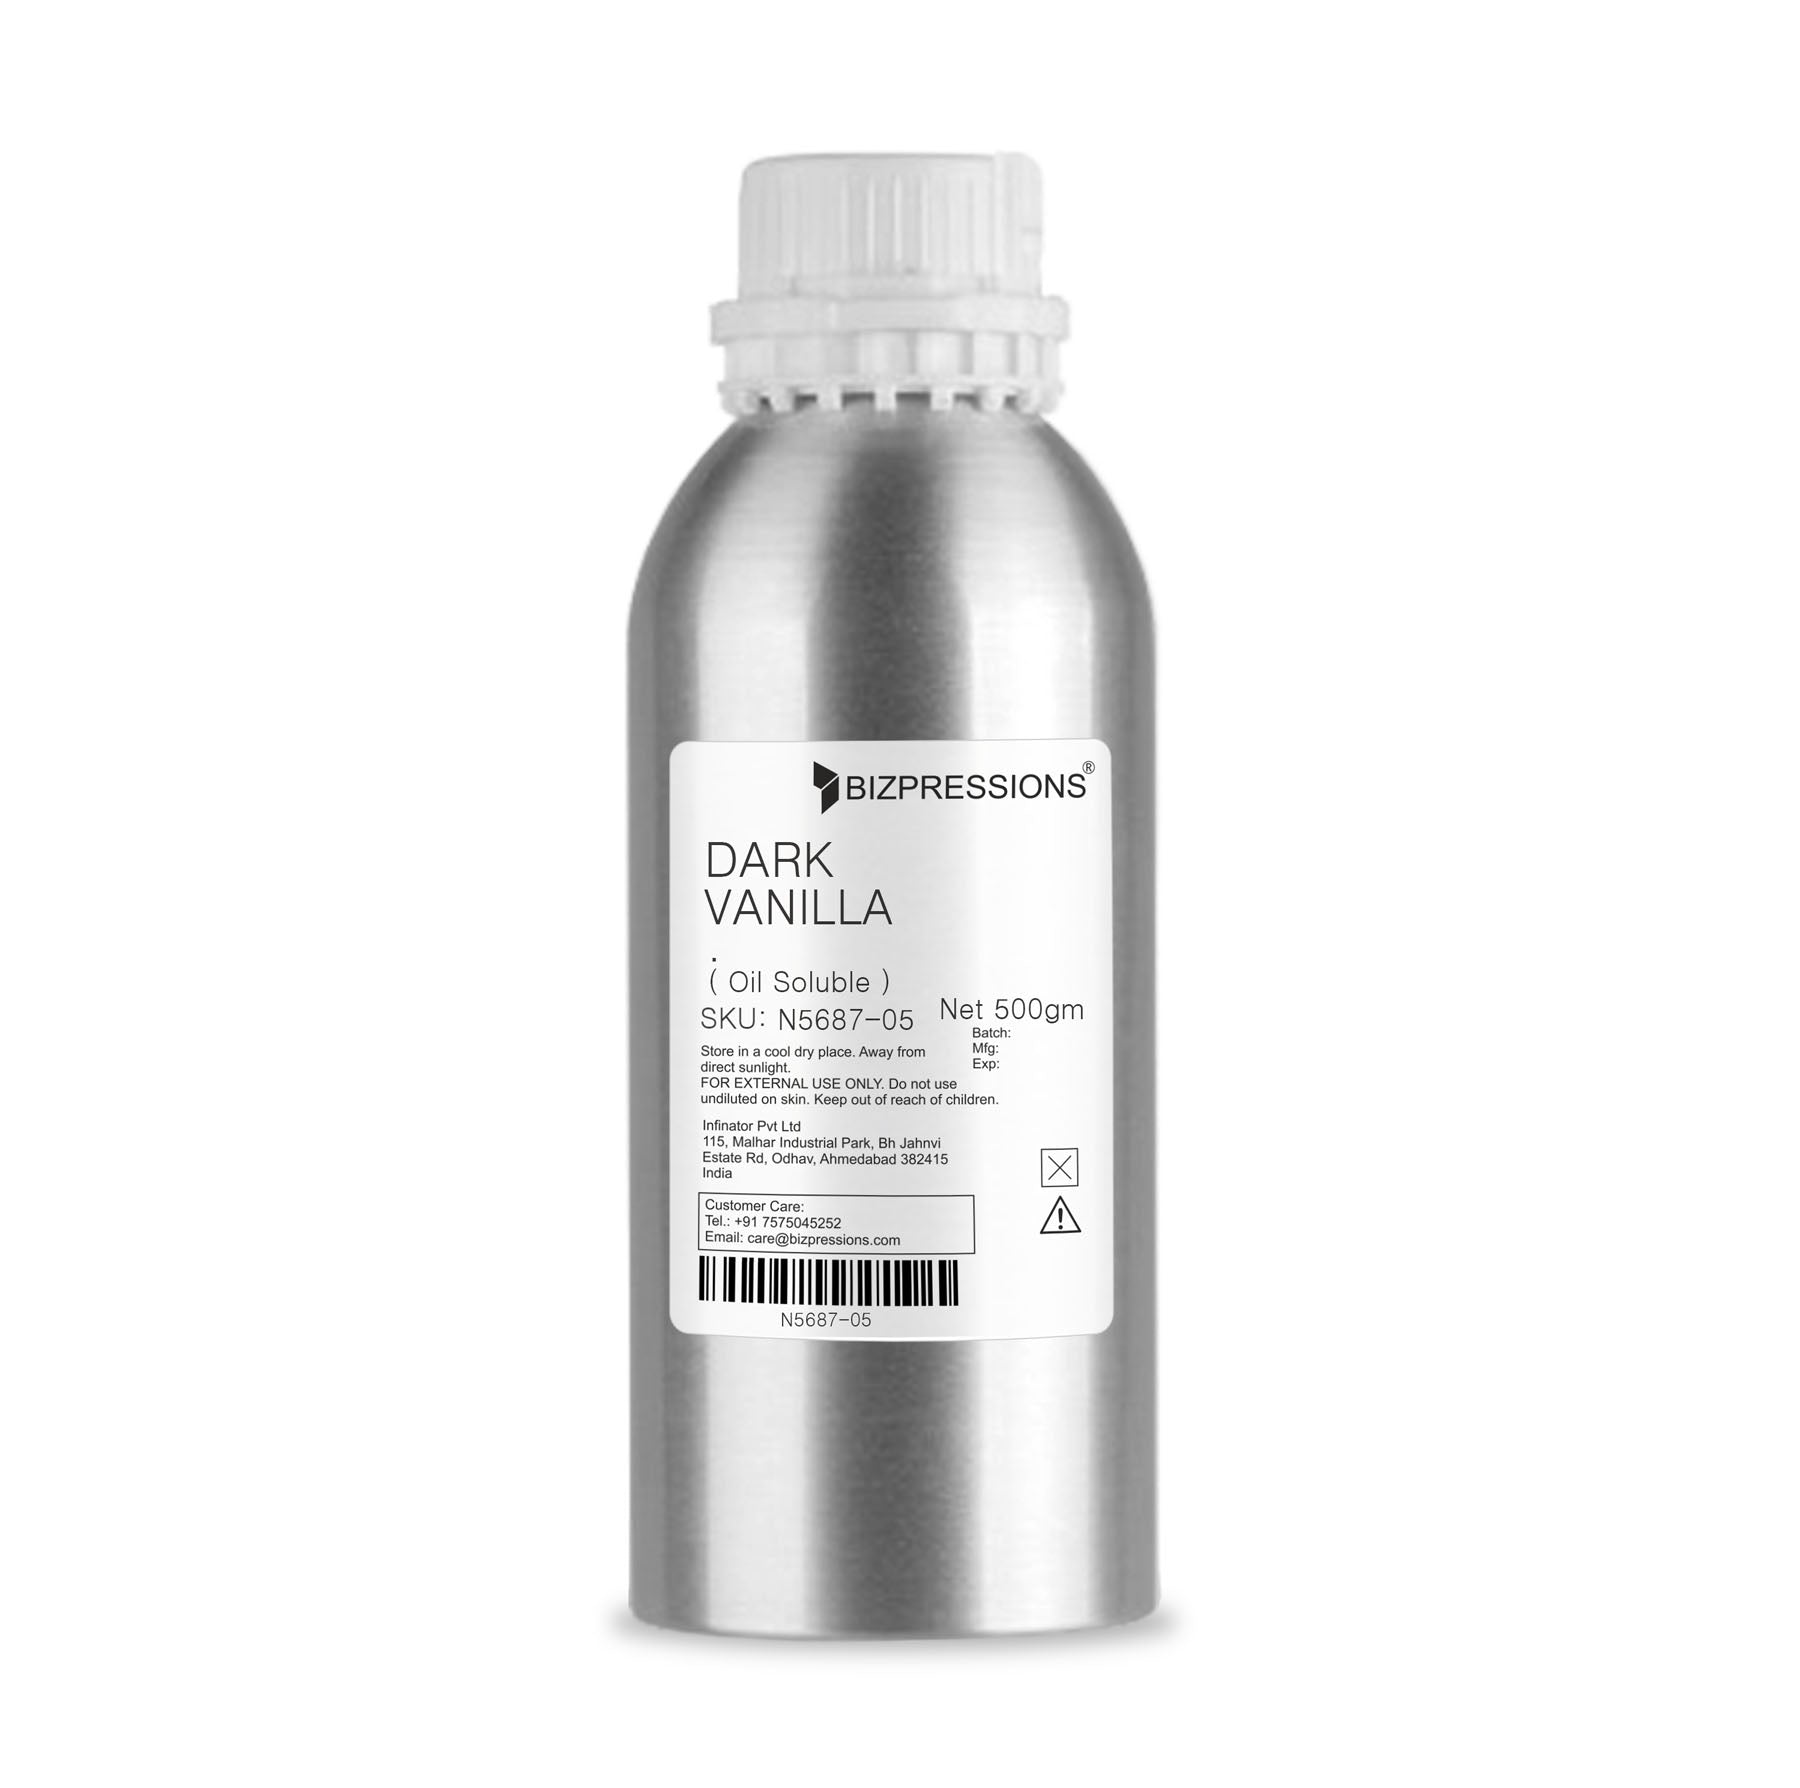 DARK VANILLA - Fragrance ( Oil Soluble ) - 500 gm